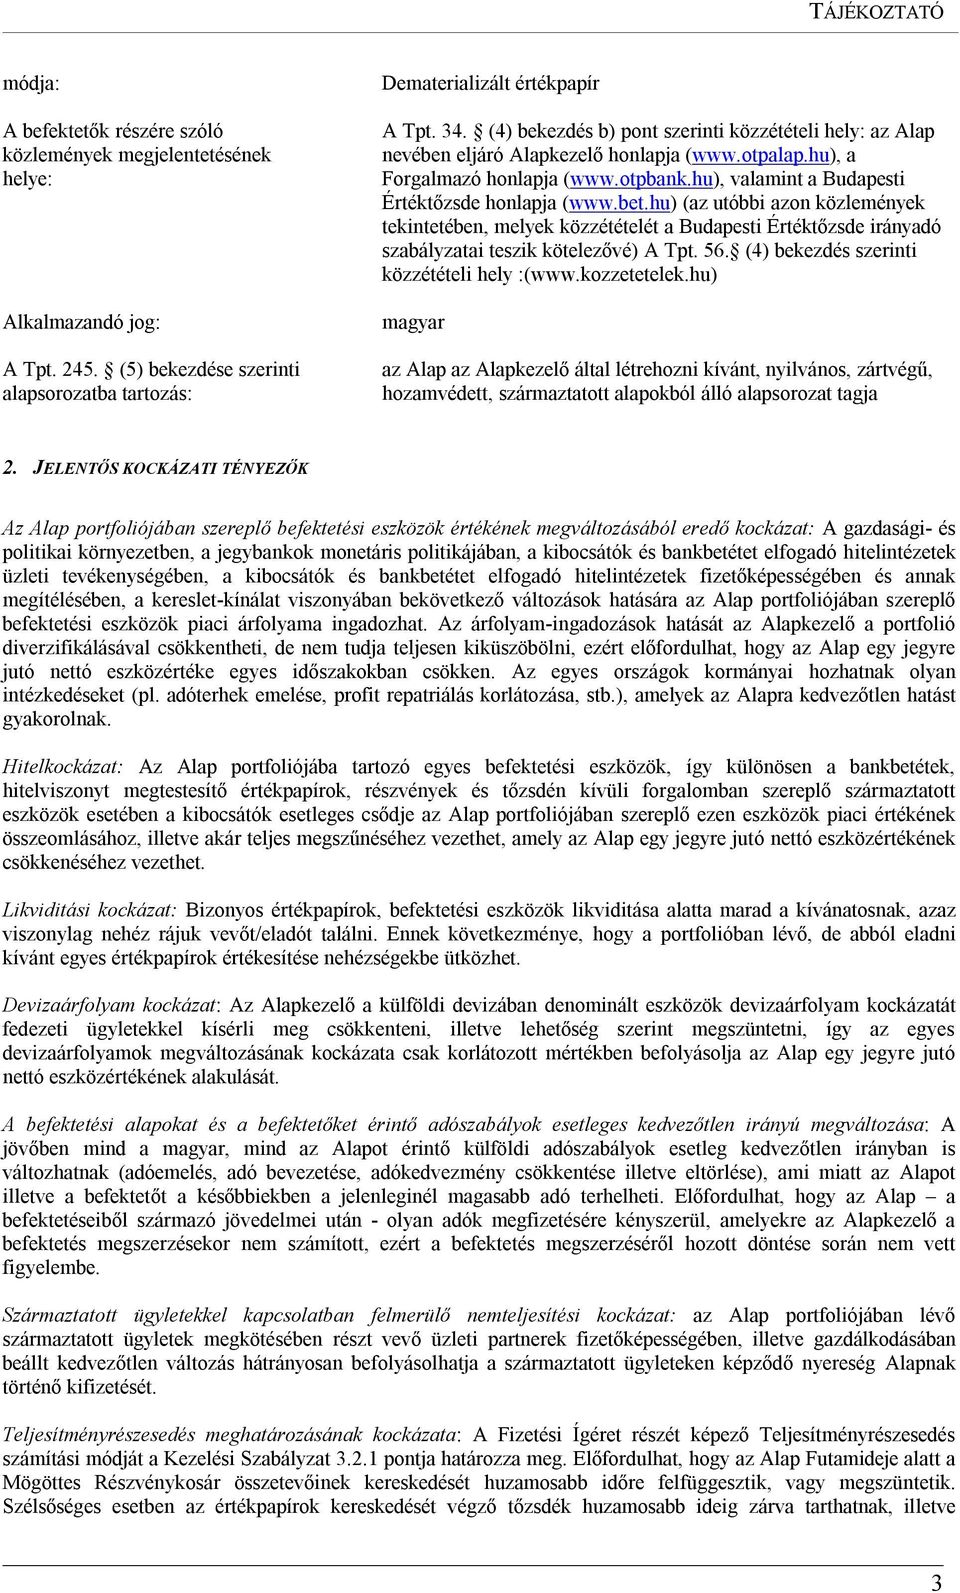 hu) (az utóbbi azon közlemények tekintetében, melyek közzétételét a Budapesti Értéktőzsde irányadó szabályzatai teszik kötelezővé) A Tpt. 56. (4) bekezdés szerinti közzétételi hely :(www.kozzetetelek.